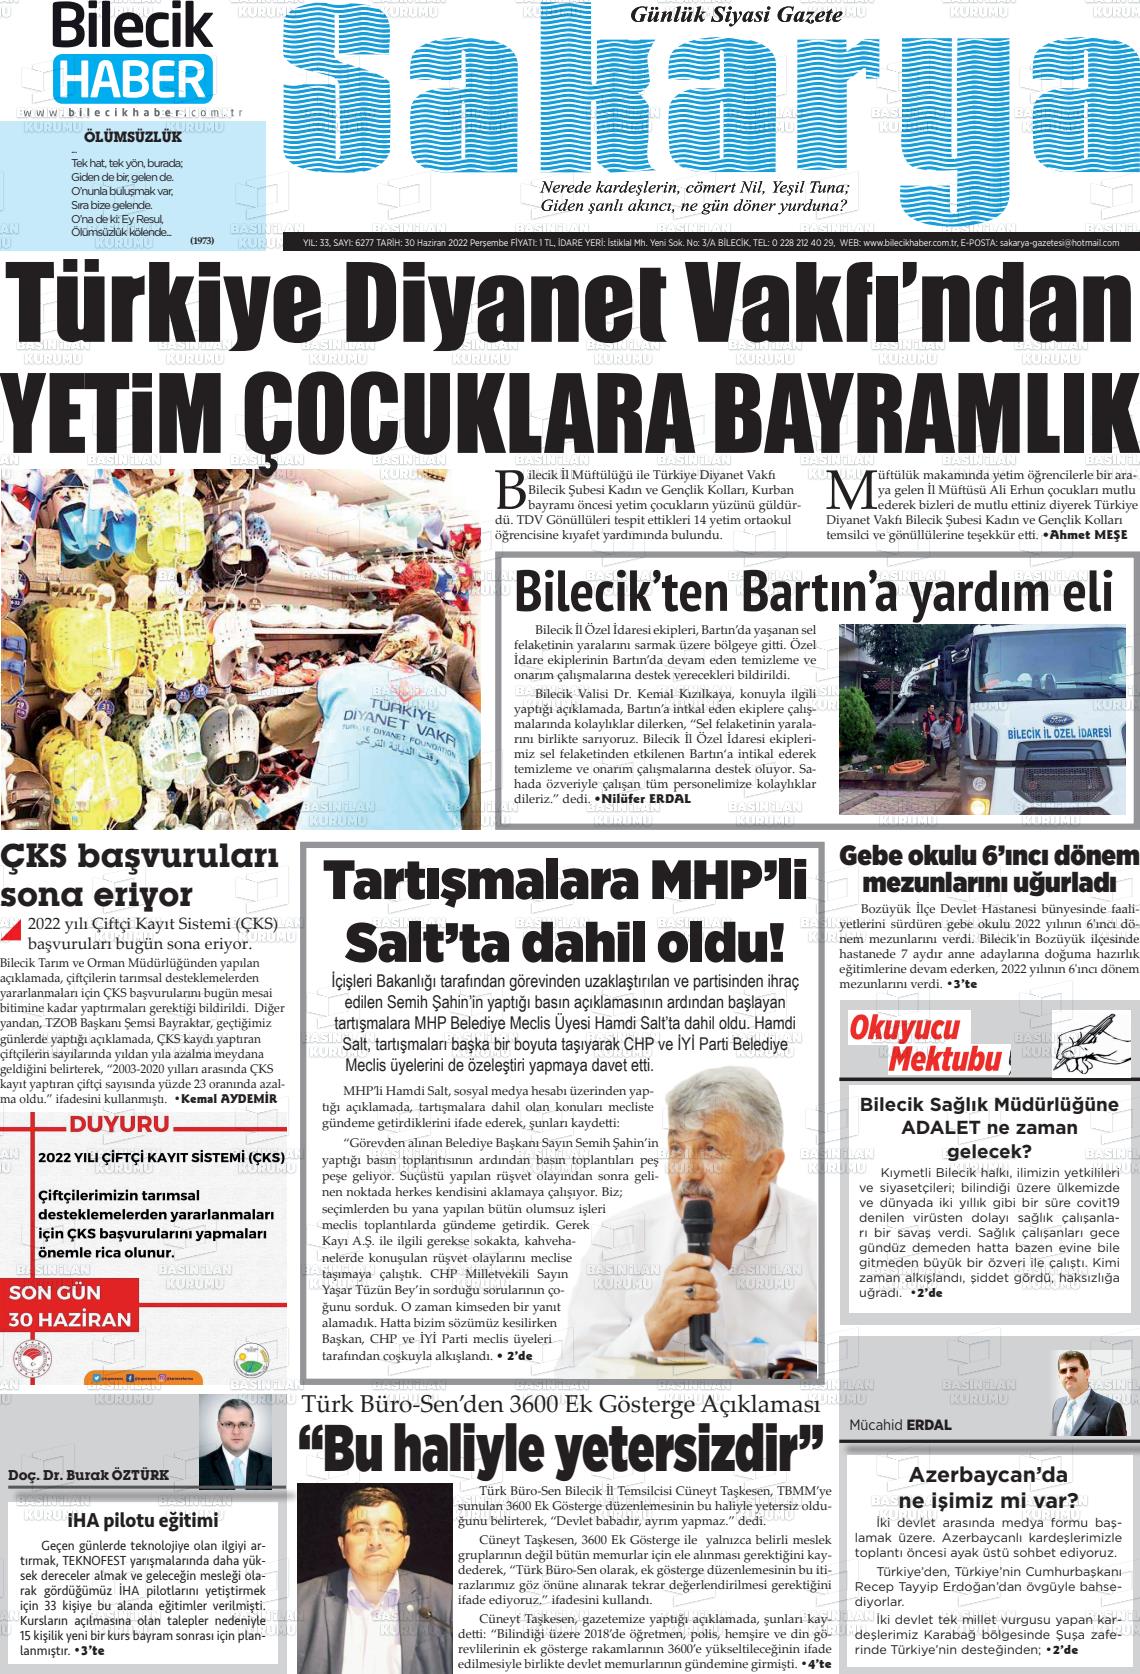 02 Temmuz 2022 Bilecik Haber Sakarya Gazete Manşeti